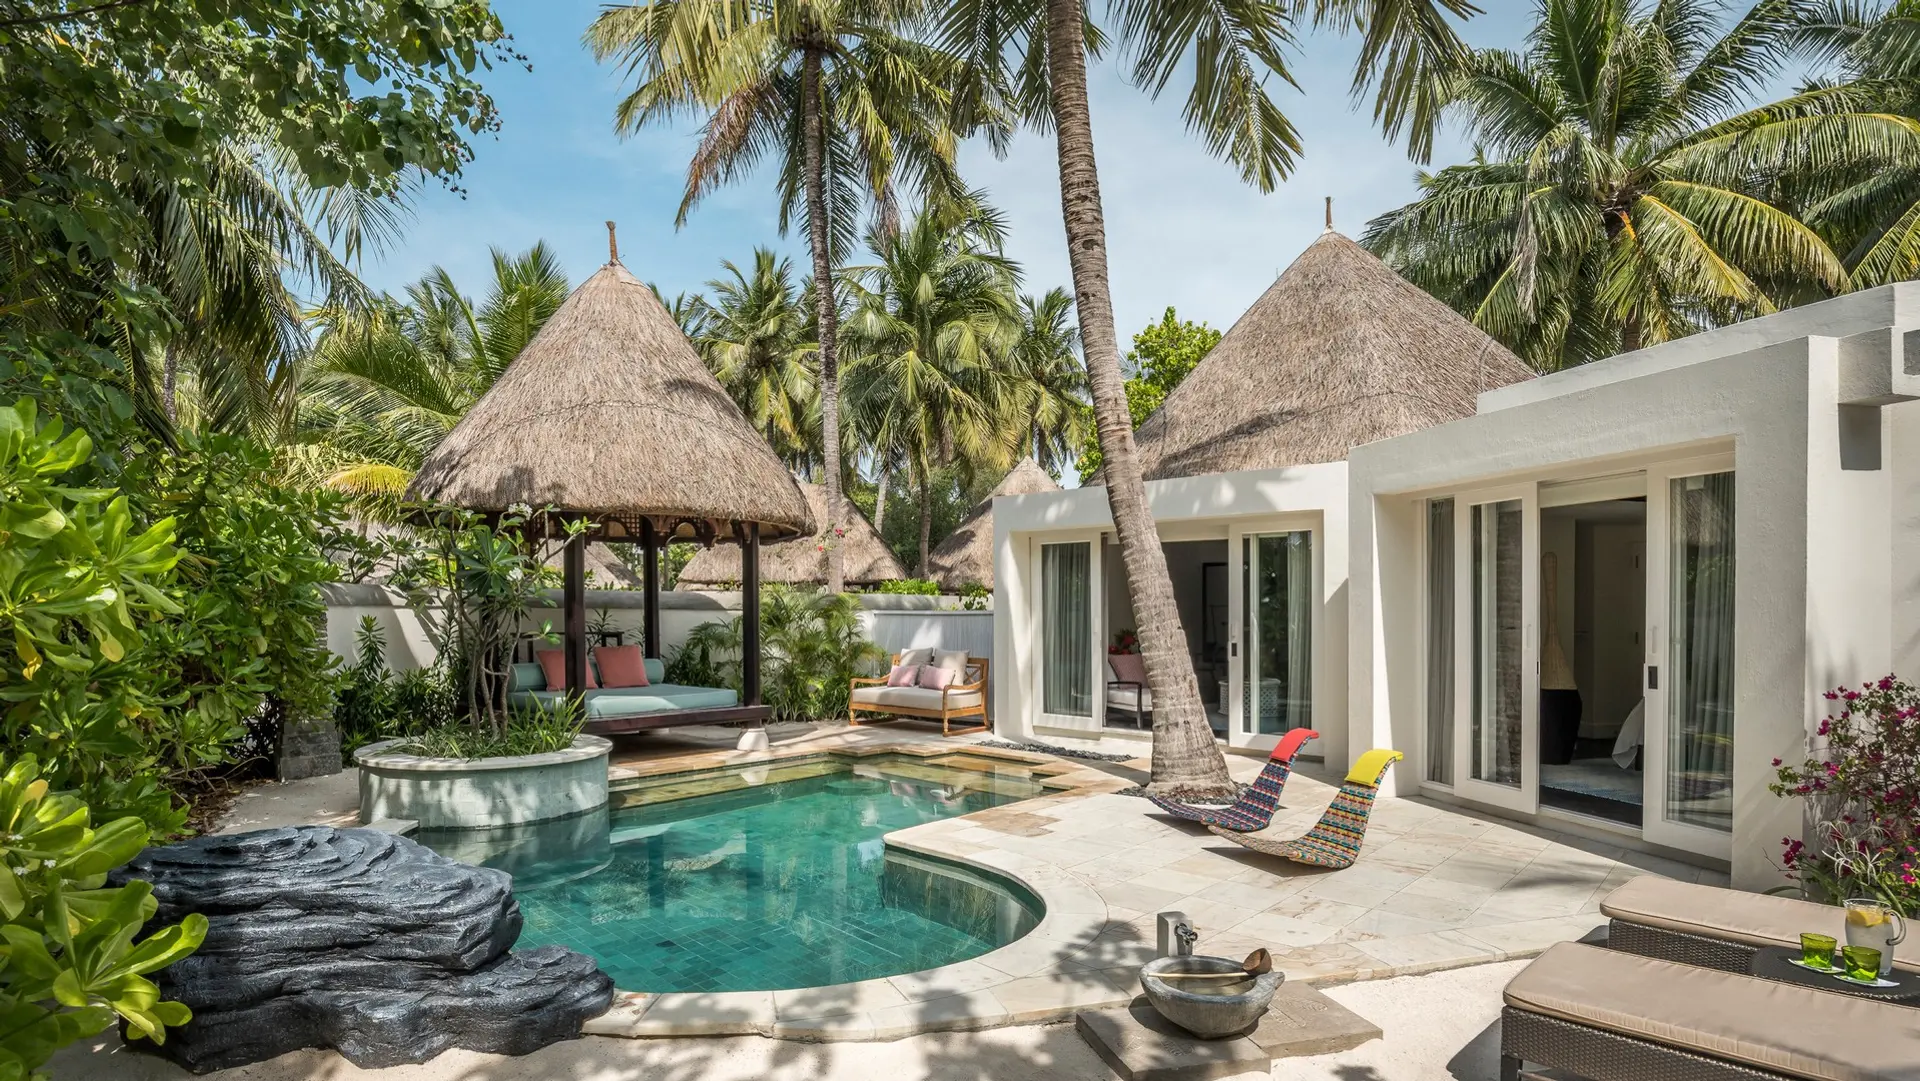 Hotel review Accommodation' - Four Seasons Resort Maldives at Kuda Huraa - 2